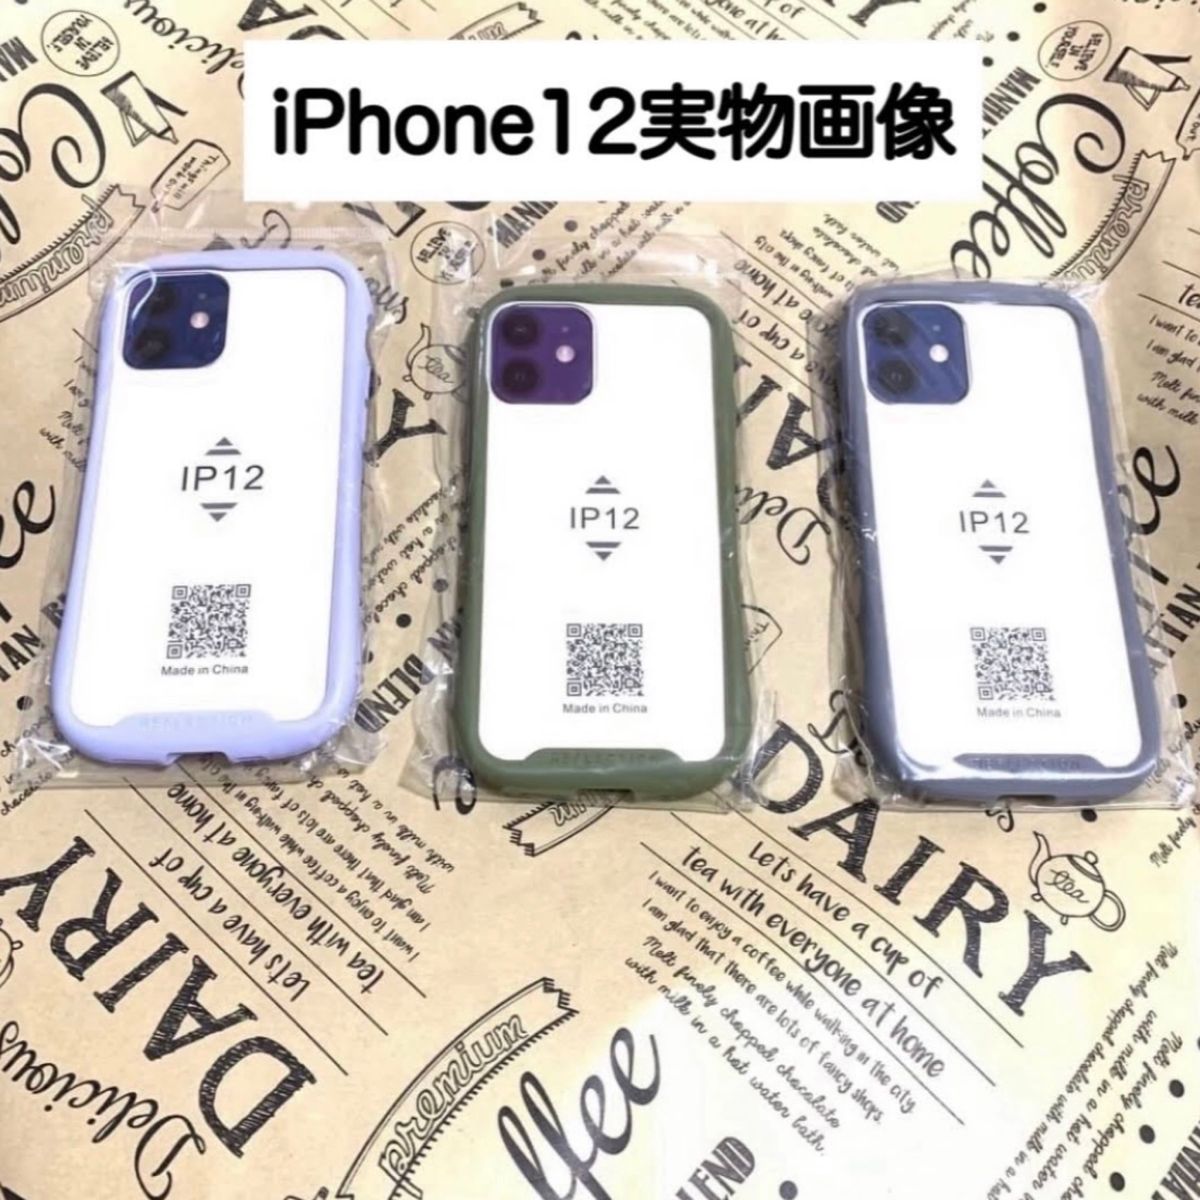 iPhoneケース iphone12 iphone 12 スマホケース アイフォン ケース シンプル 韓国 クリア 透明 グレー